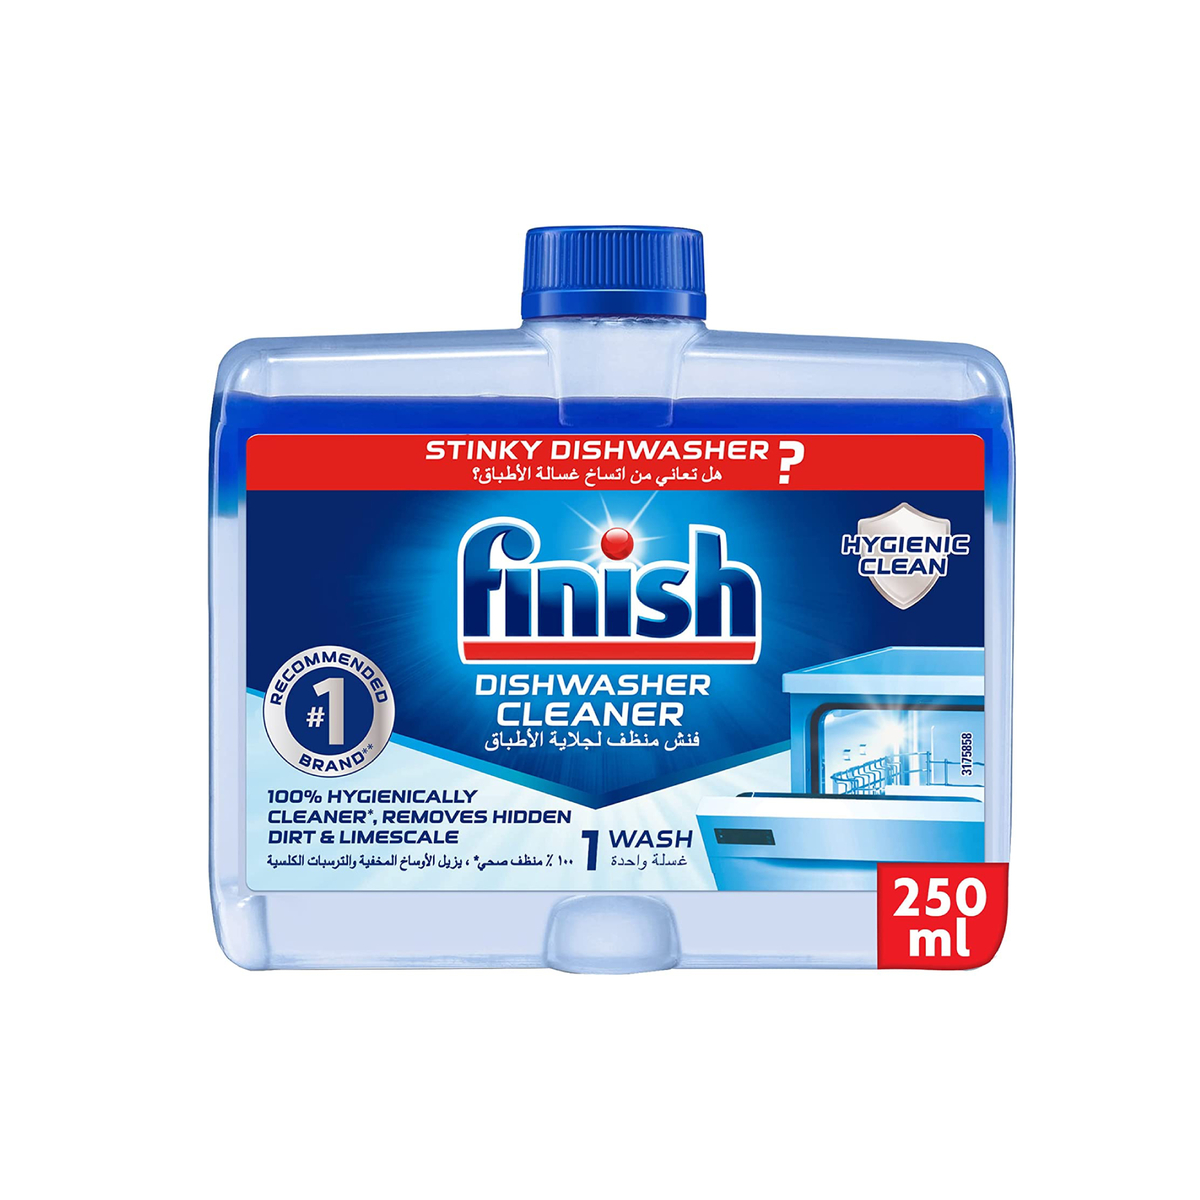 اشتري قم بشراء فينيش منظف غسالة الصحون 250 مل Online at Best Price من الموقع - من لولو هايبر ماركت Dishwasher Detergent في الامارات